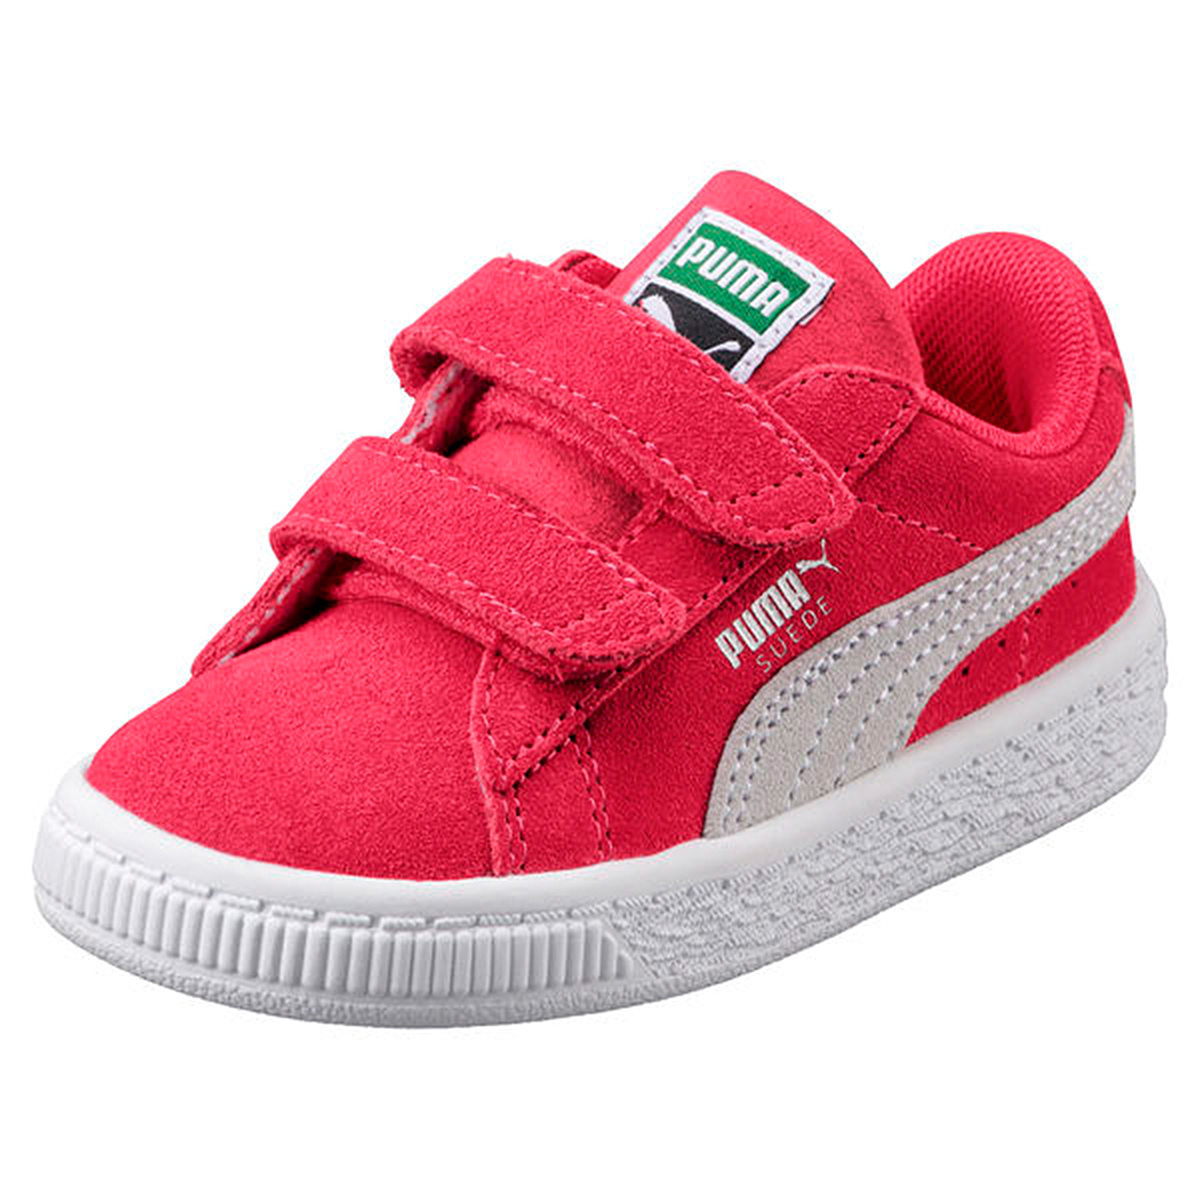 Puma Suede Classic V Inf Kinder Sneaker Schuhe 365077 04 pink